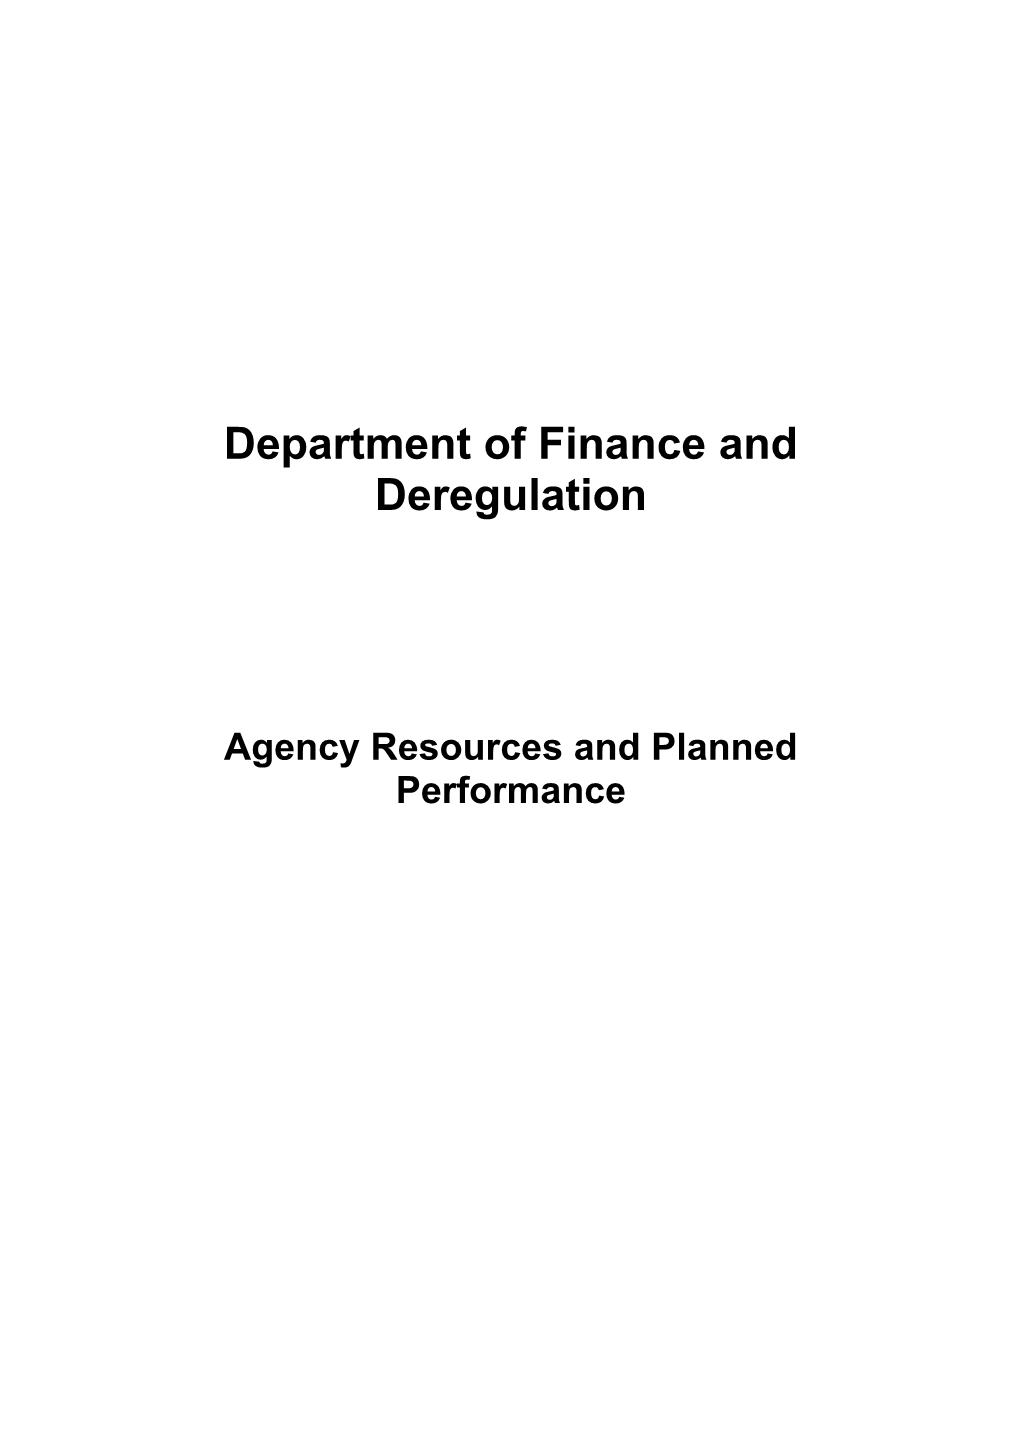 Portfolio Budget Statements 2012-13 - Department of Finance and Deregulation